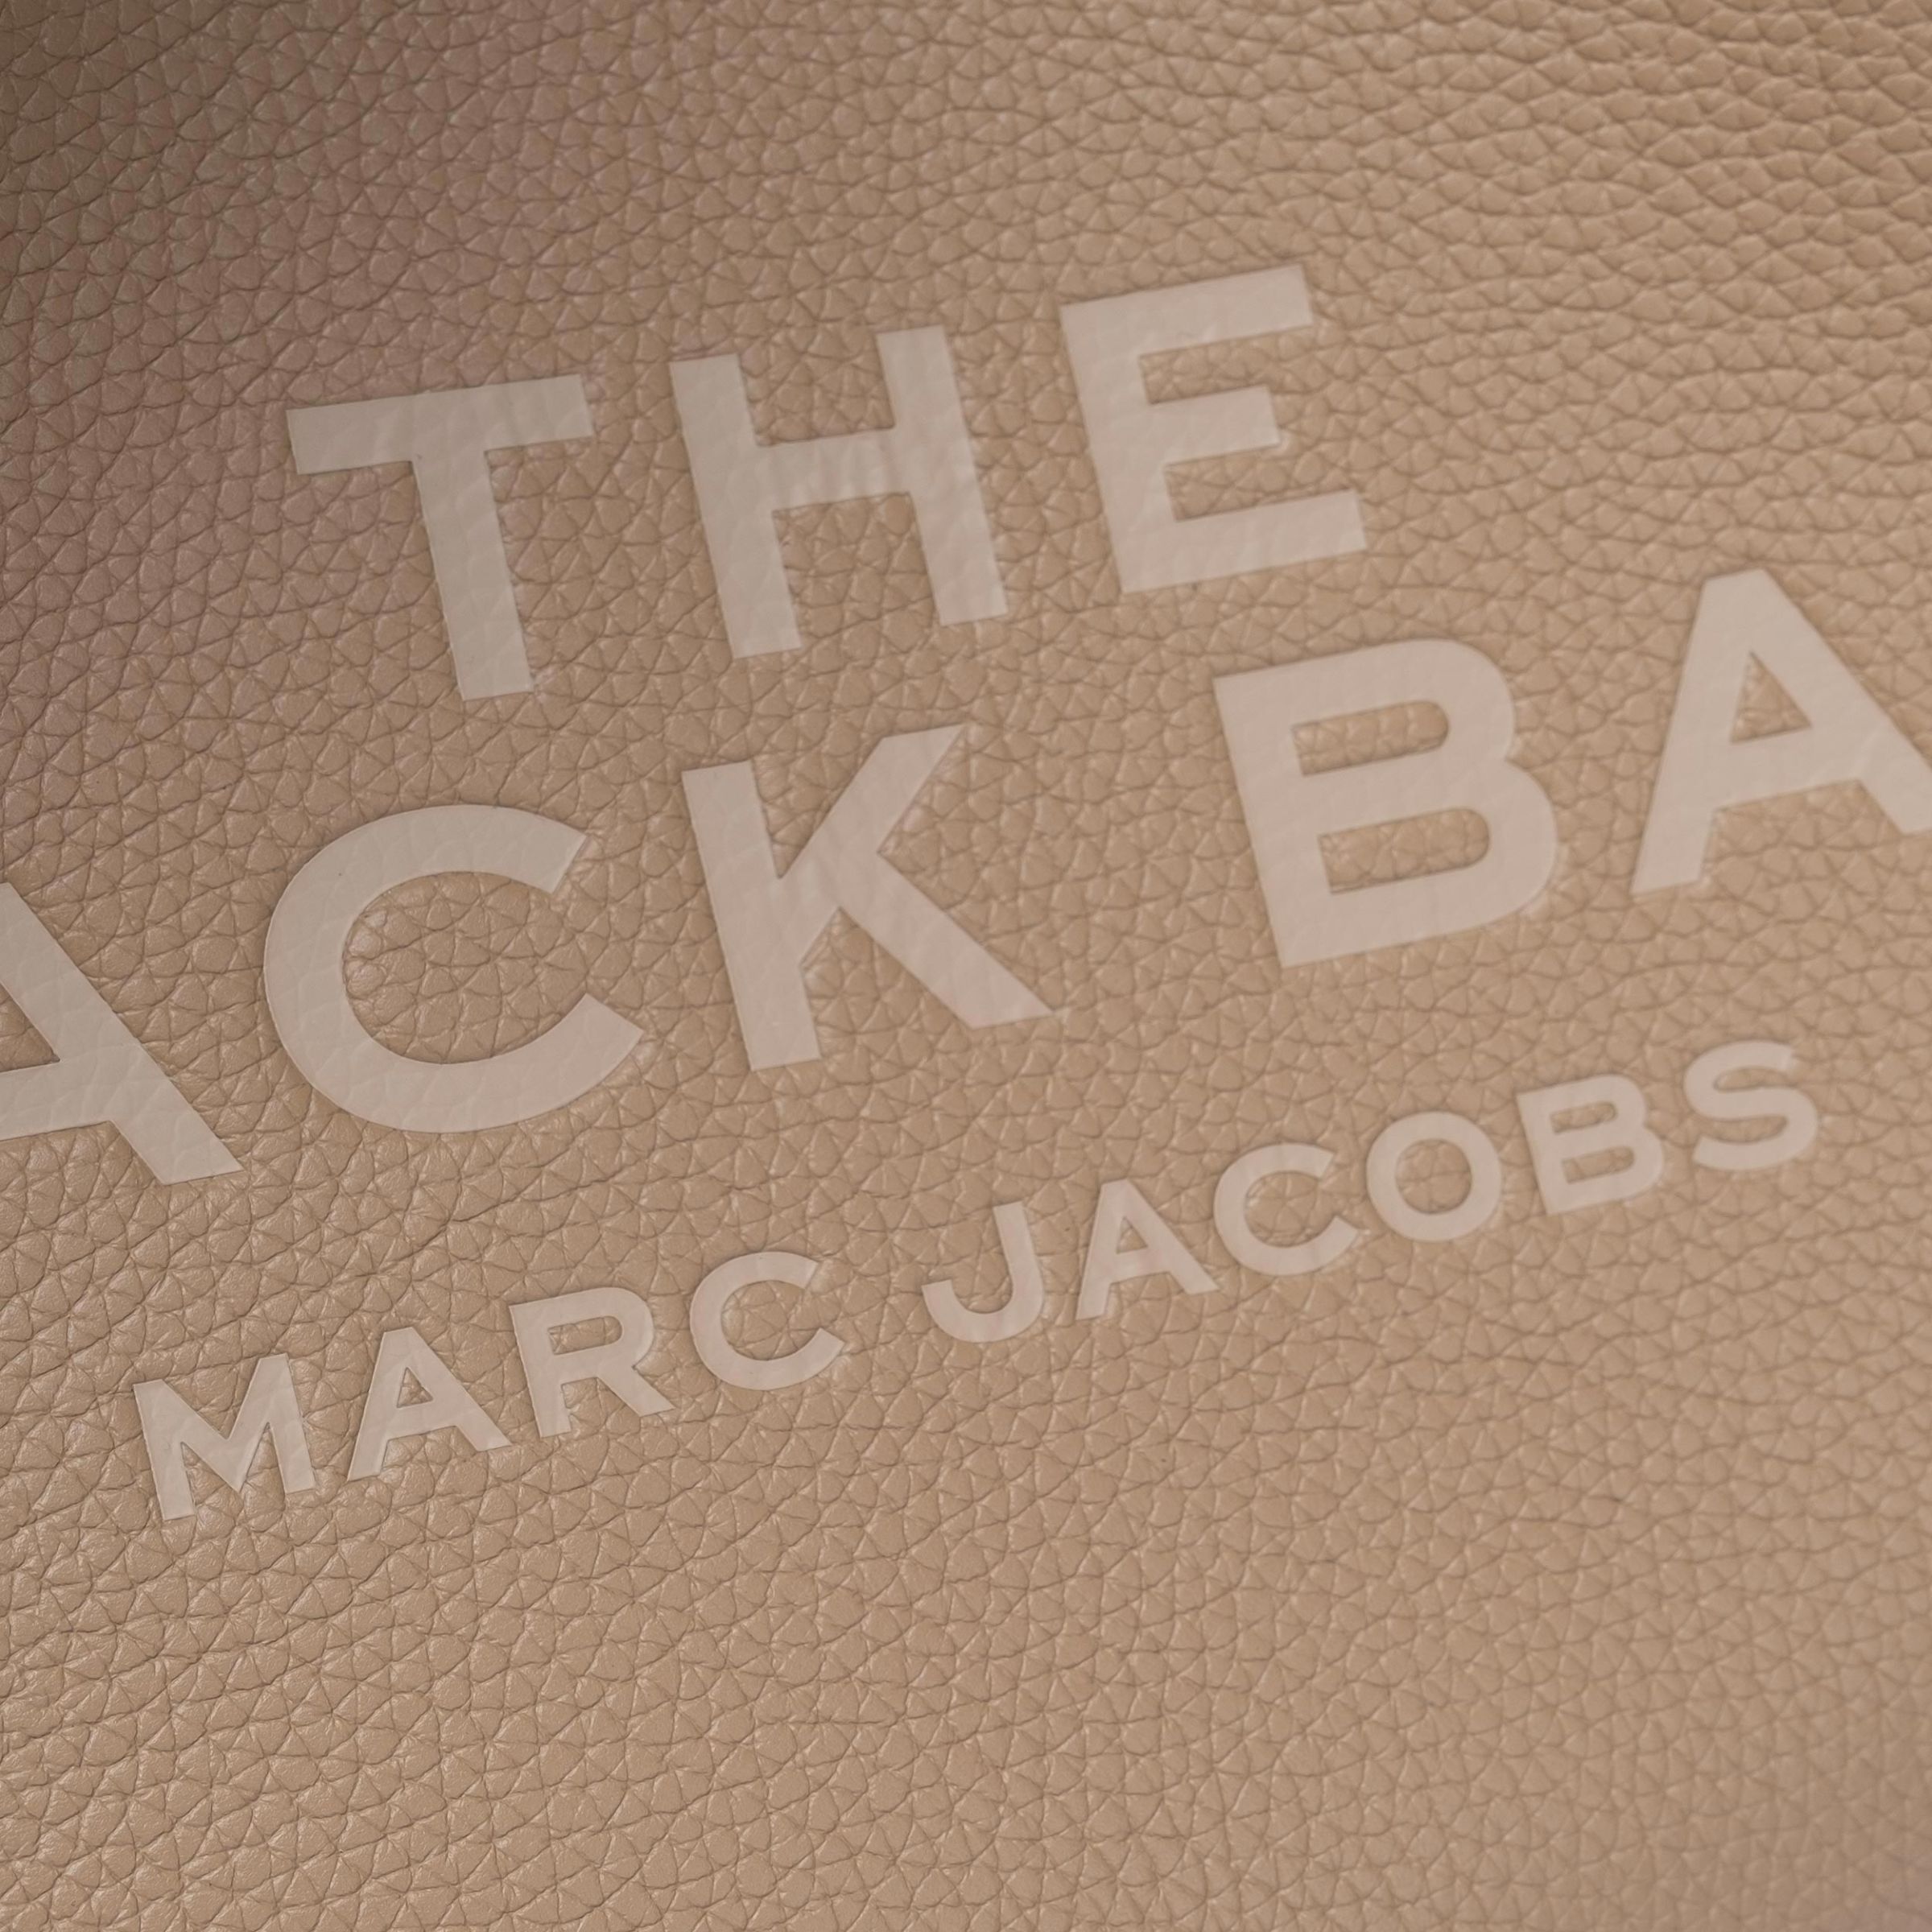 Сумка Marc Jacobs The Sack Bag бежевая